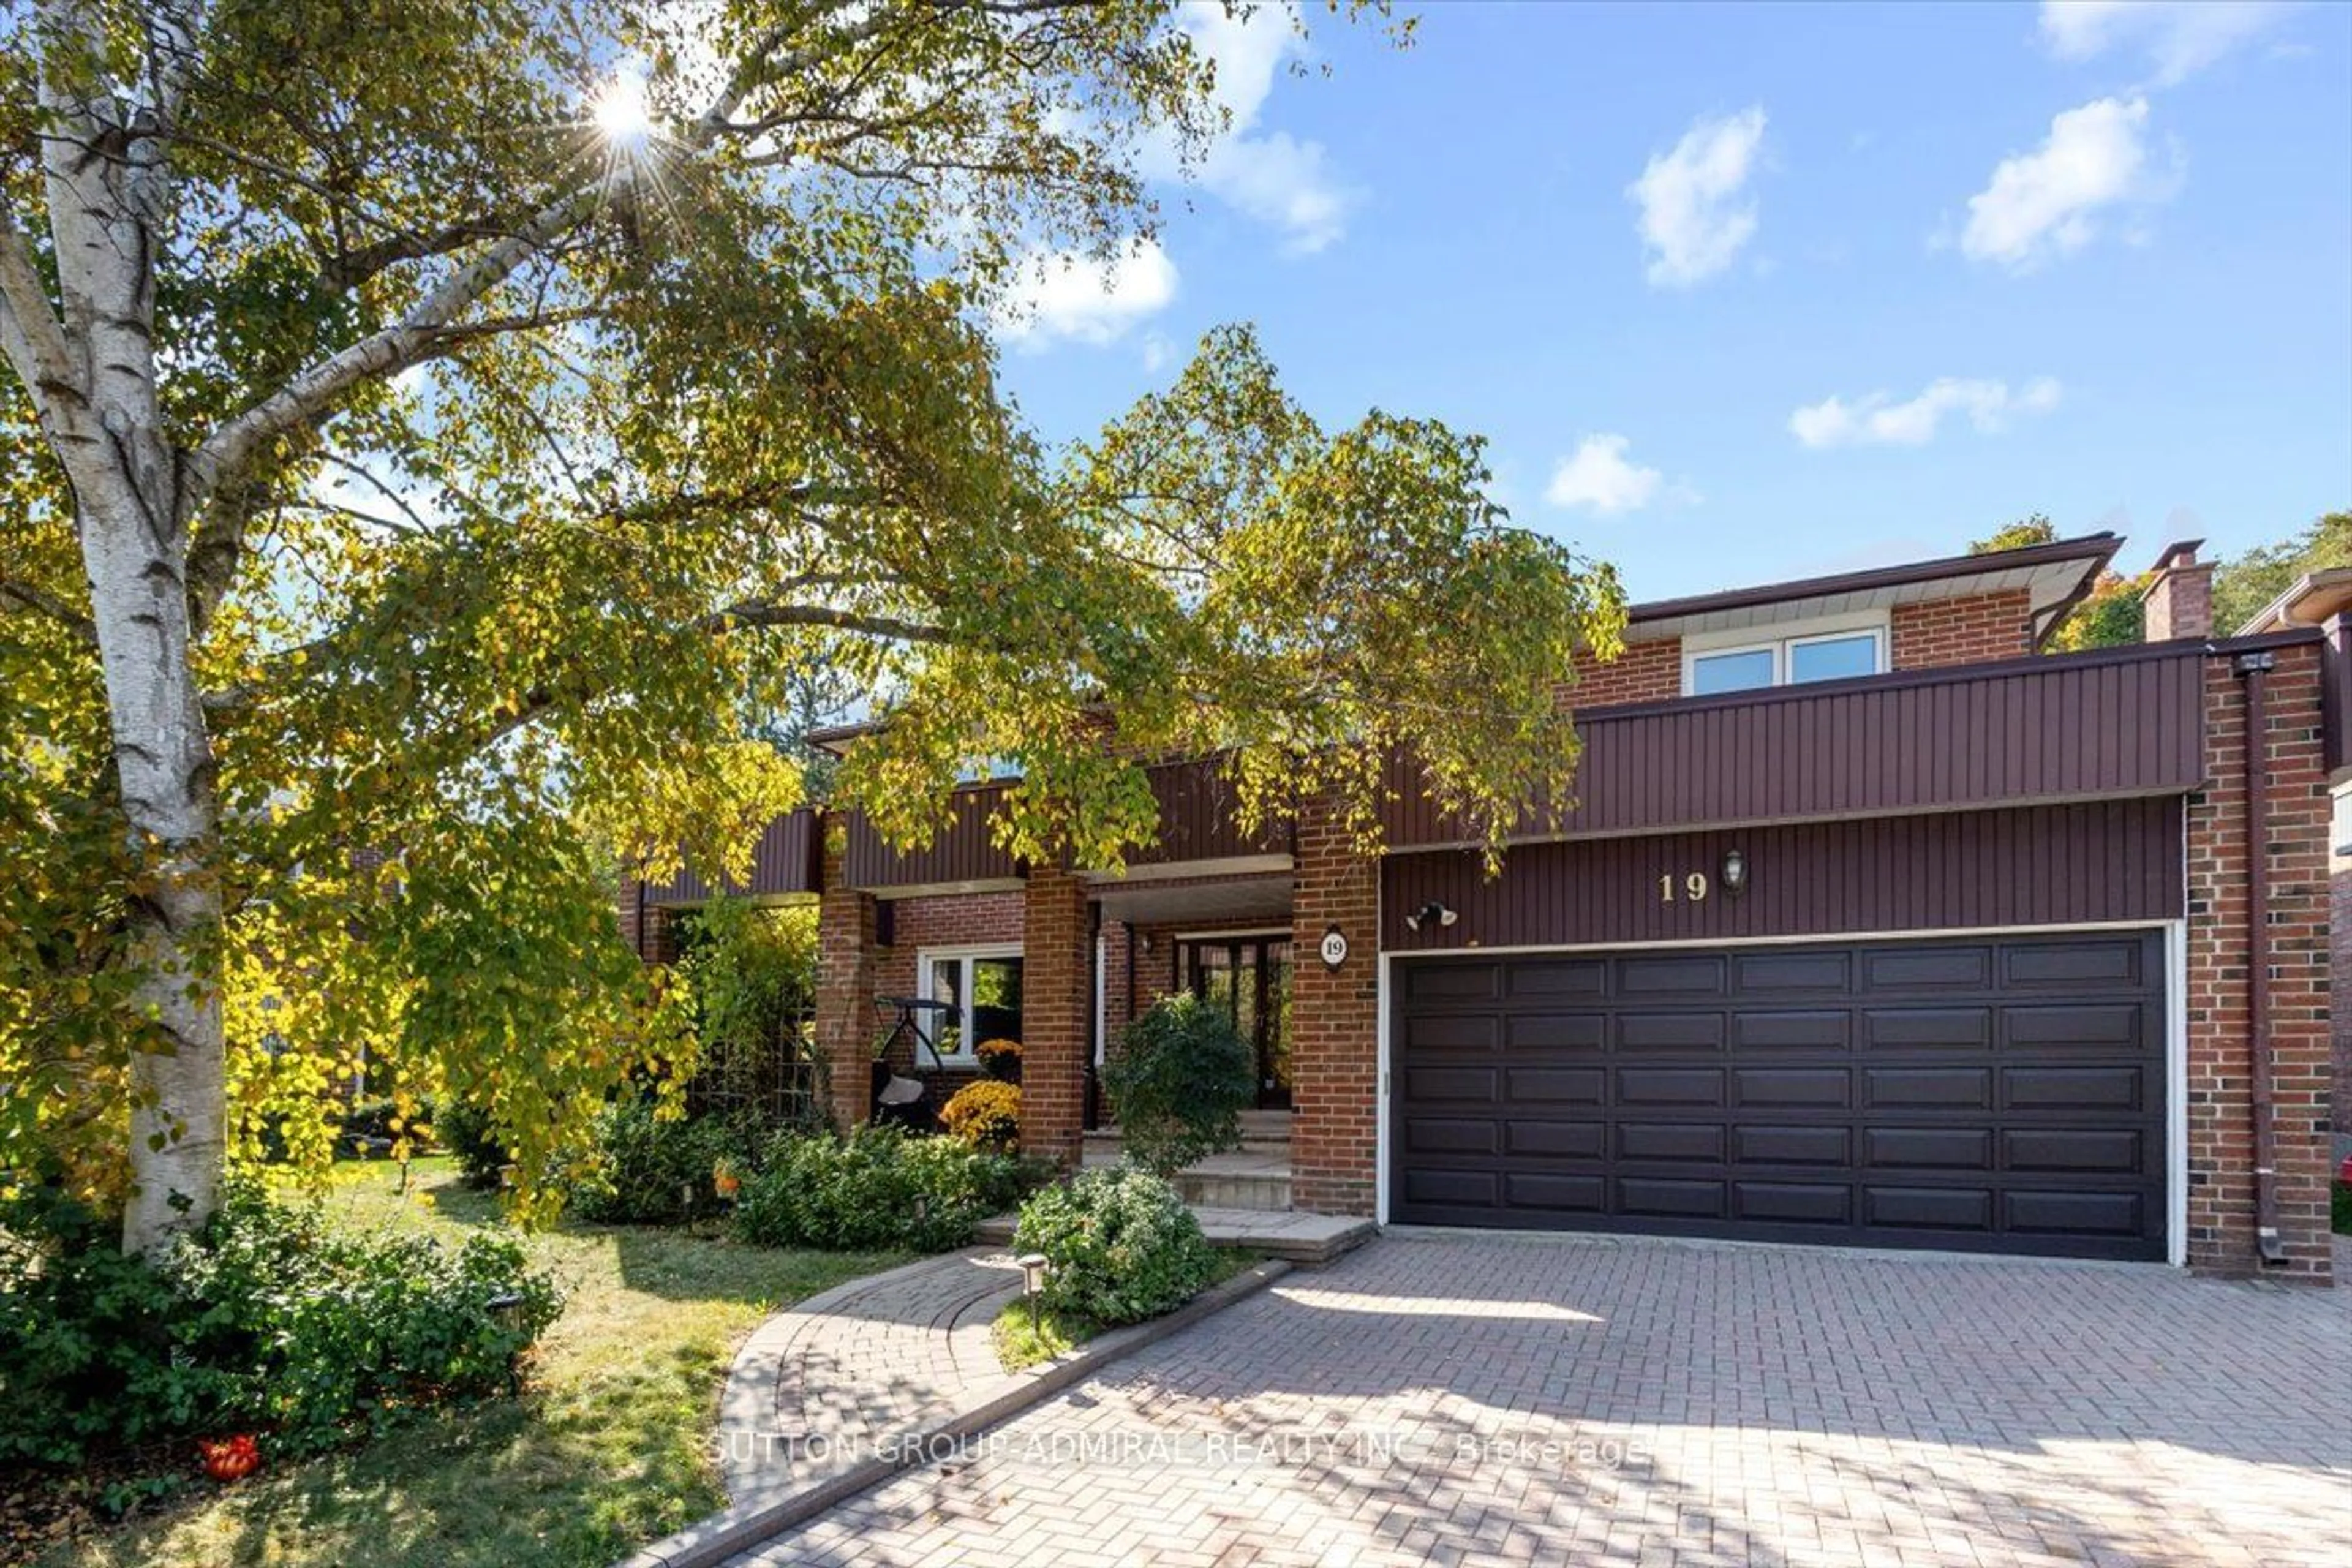 Home with brick exterior material for 19 Carmel Crt, Toronto Ontario M2M 4B2